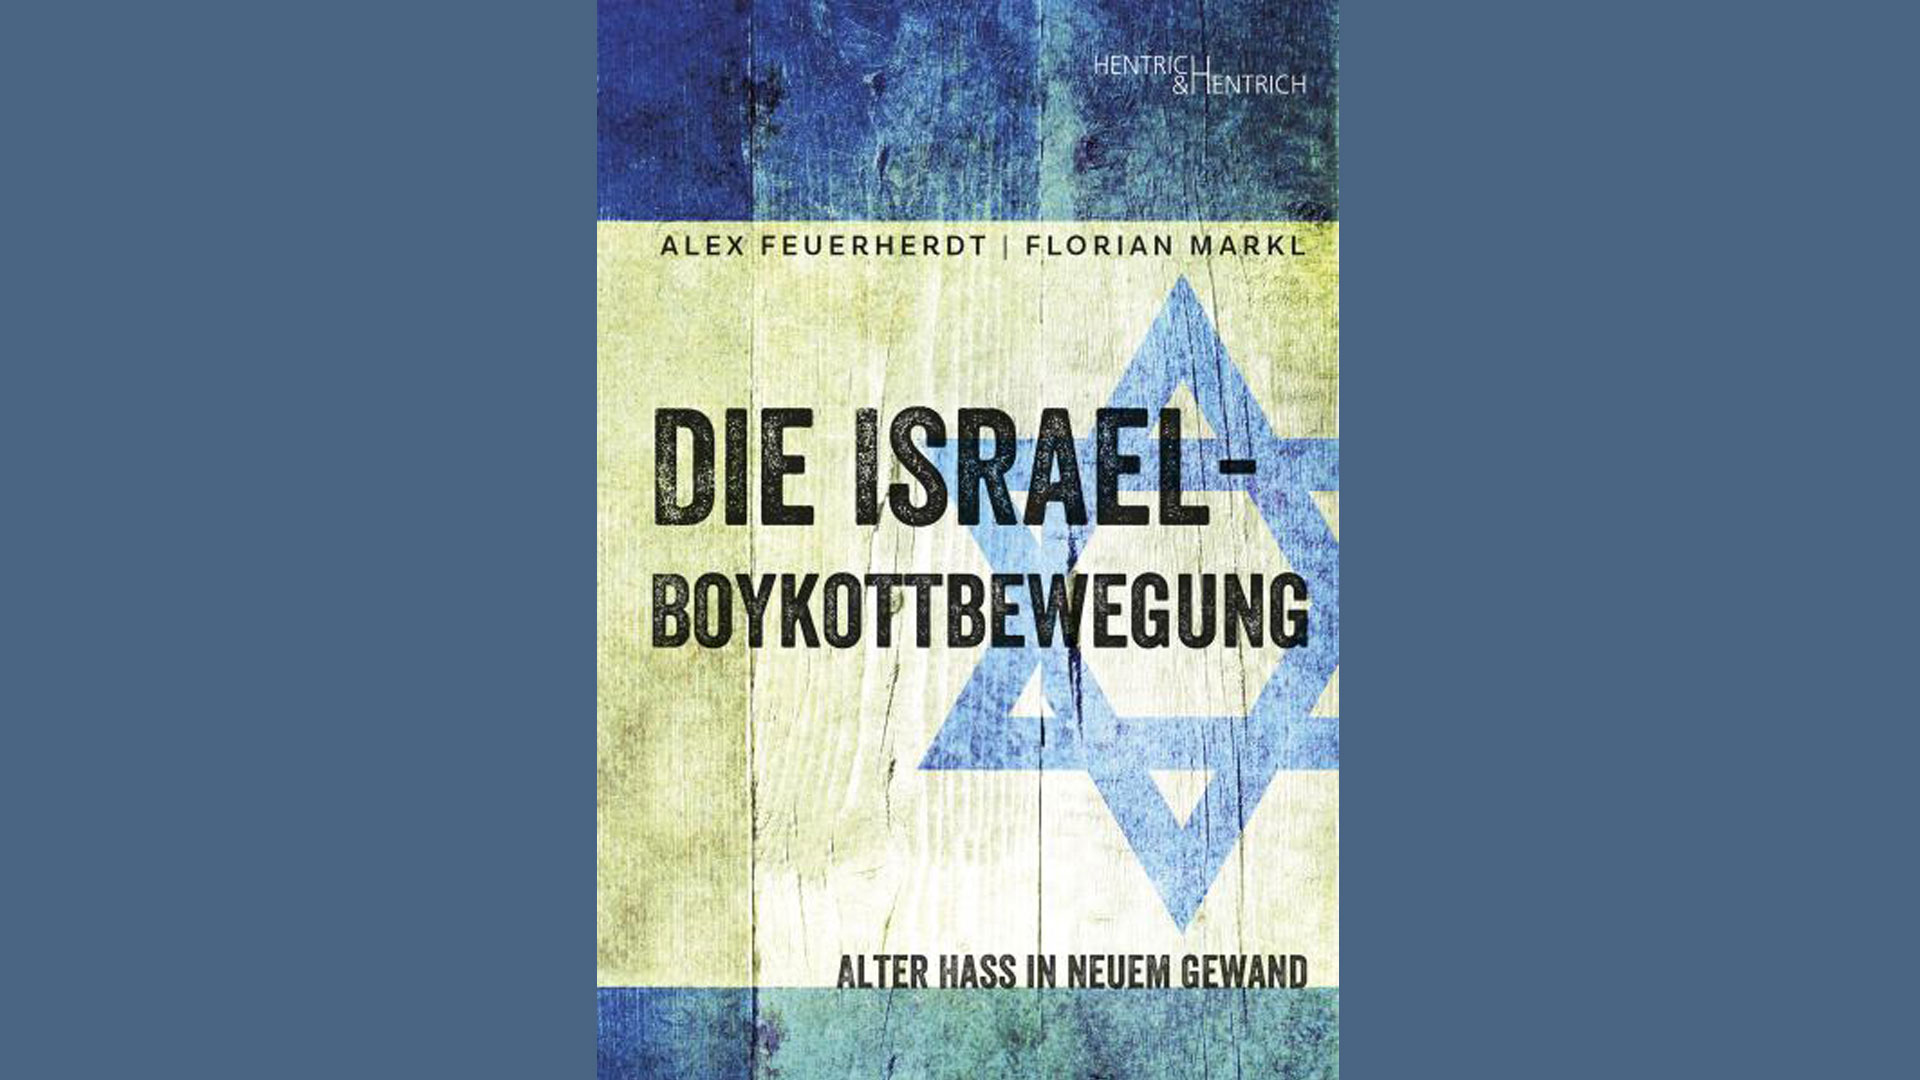 Alex Feuerherdt, Florian Markl: „Die Israel-Boykottbewegung: Alter Hass in neuem Gewand“, Hentrich & Hentrich, 196 Seiten, 19,90 Euro, ISBN: 978-3-95565-396-5